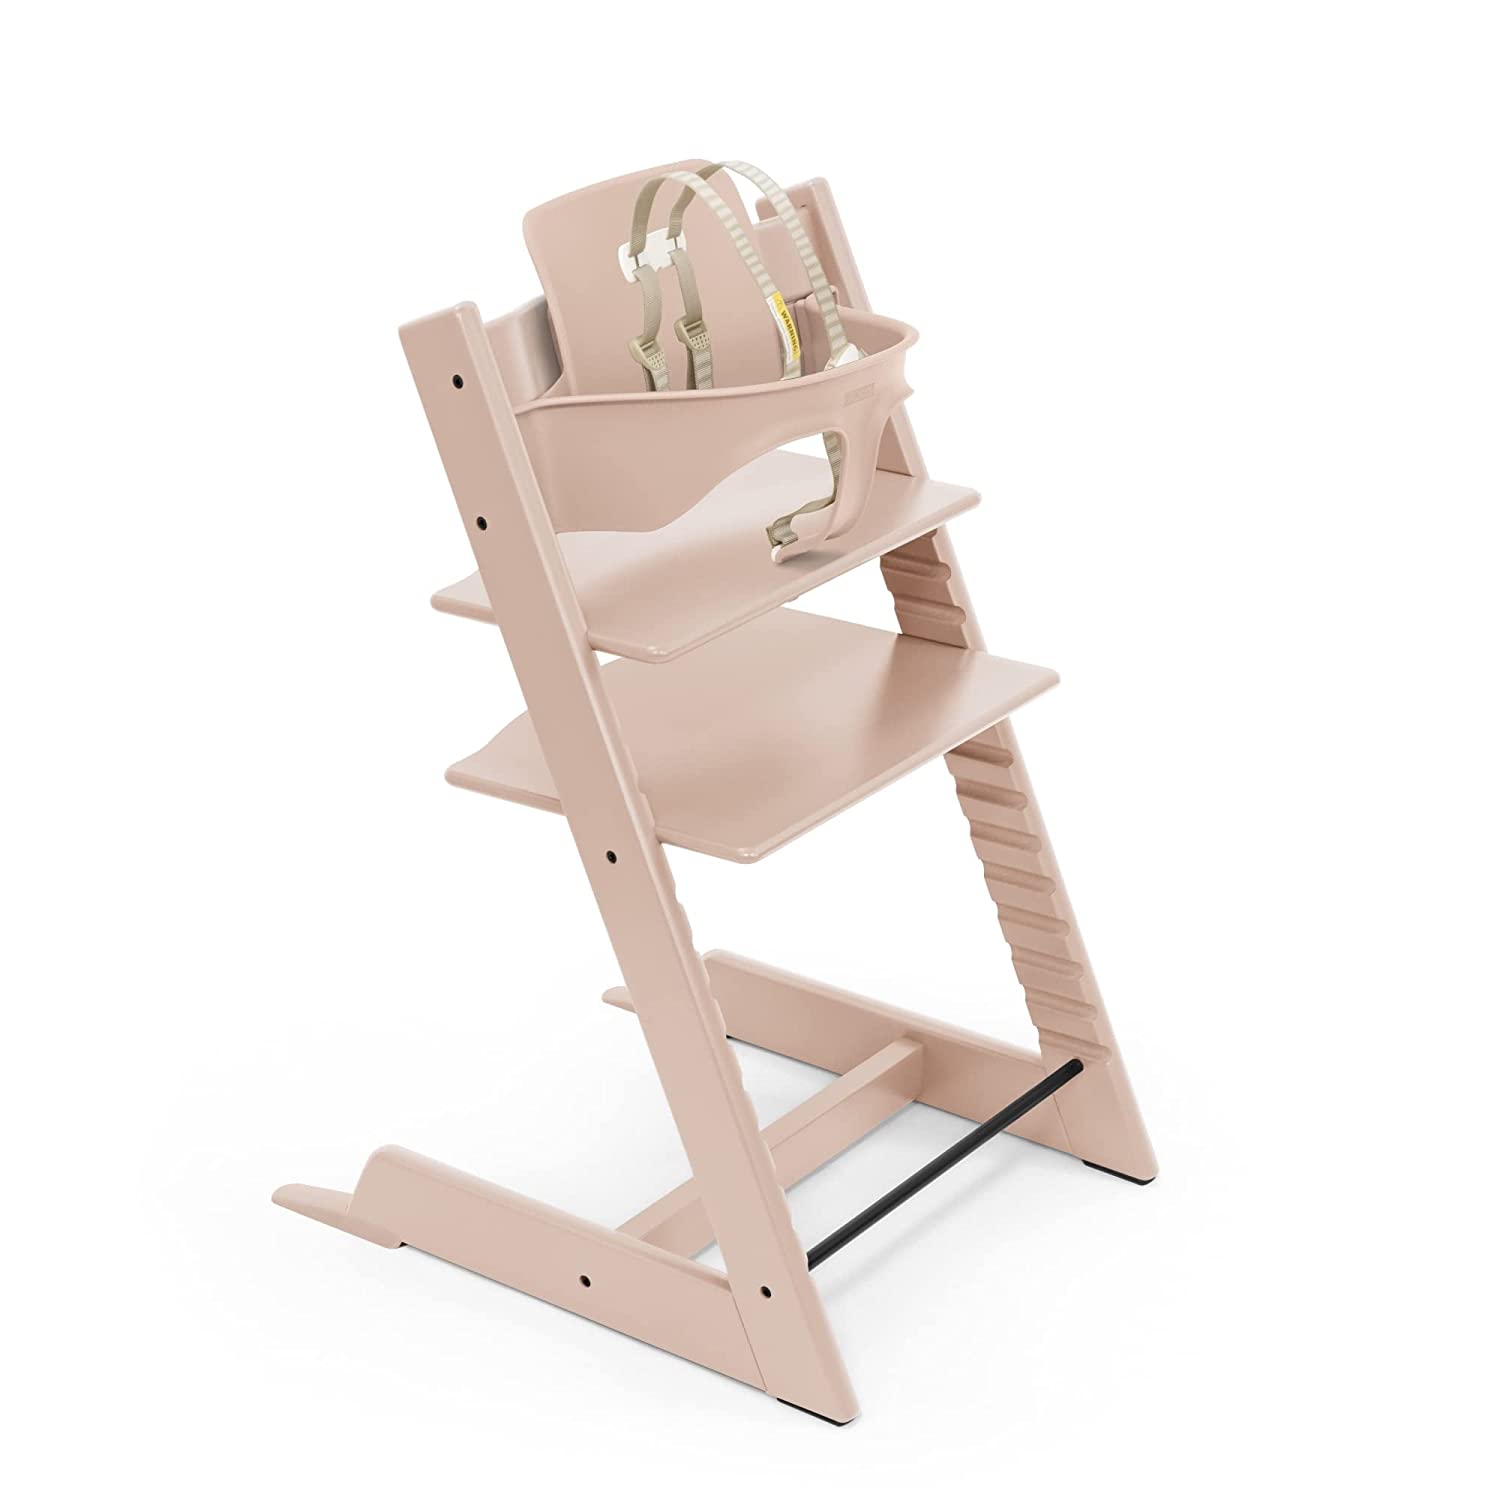 Детский стульчик-трансформер Stokke Tripp Trapp, розовый детский стульчик трансформер stokke steps натуральный белый